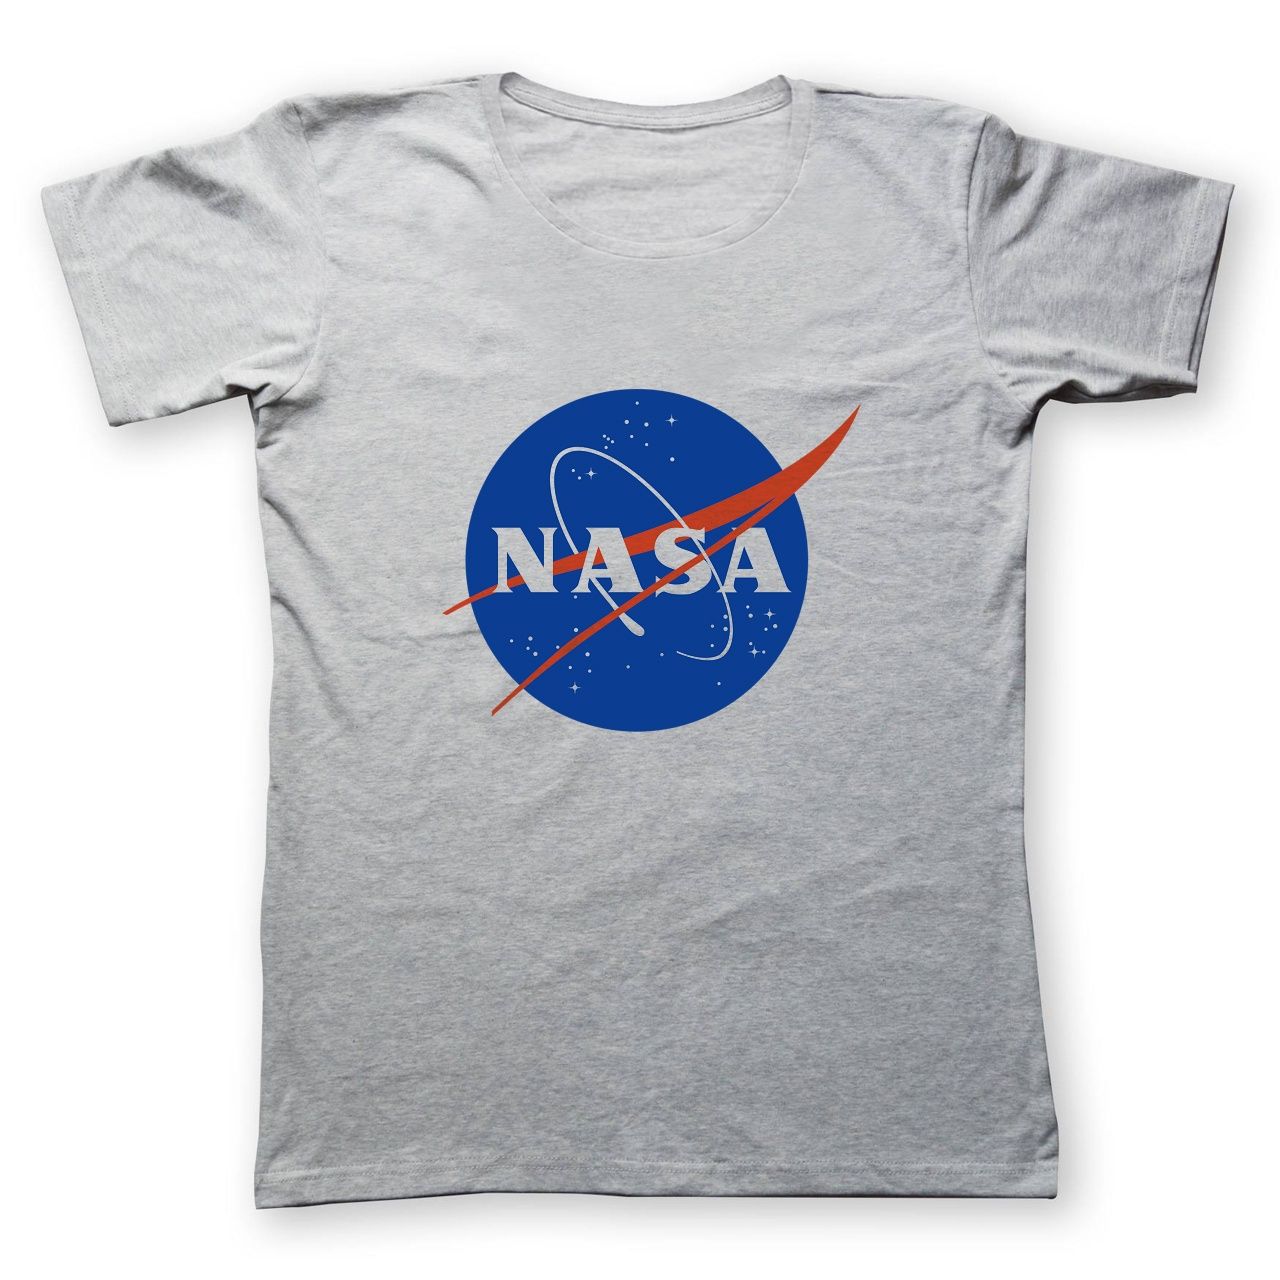 تی شرت مردانه به رسم طرح ناسا کد 285 -  - 1